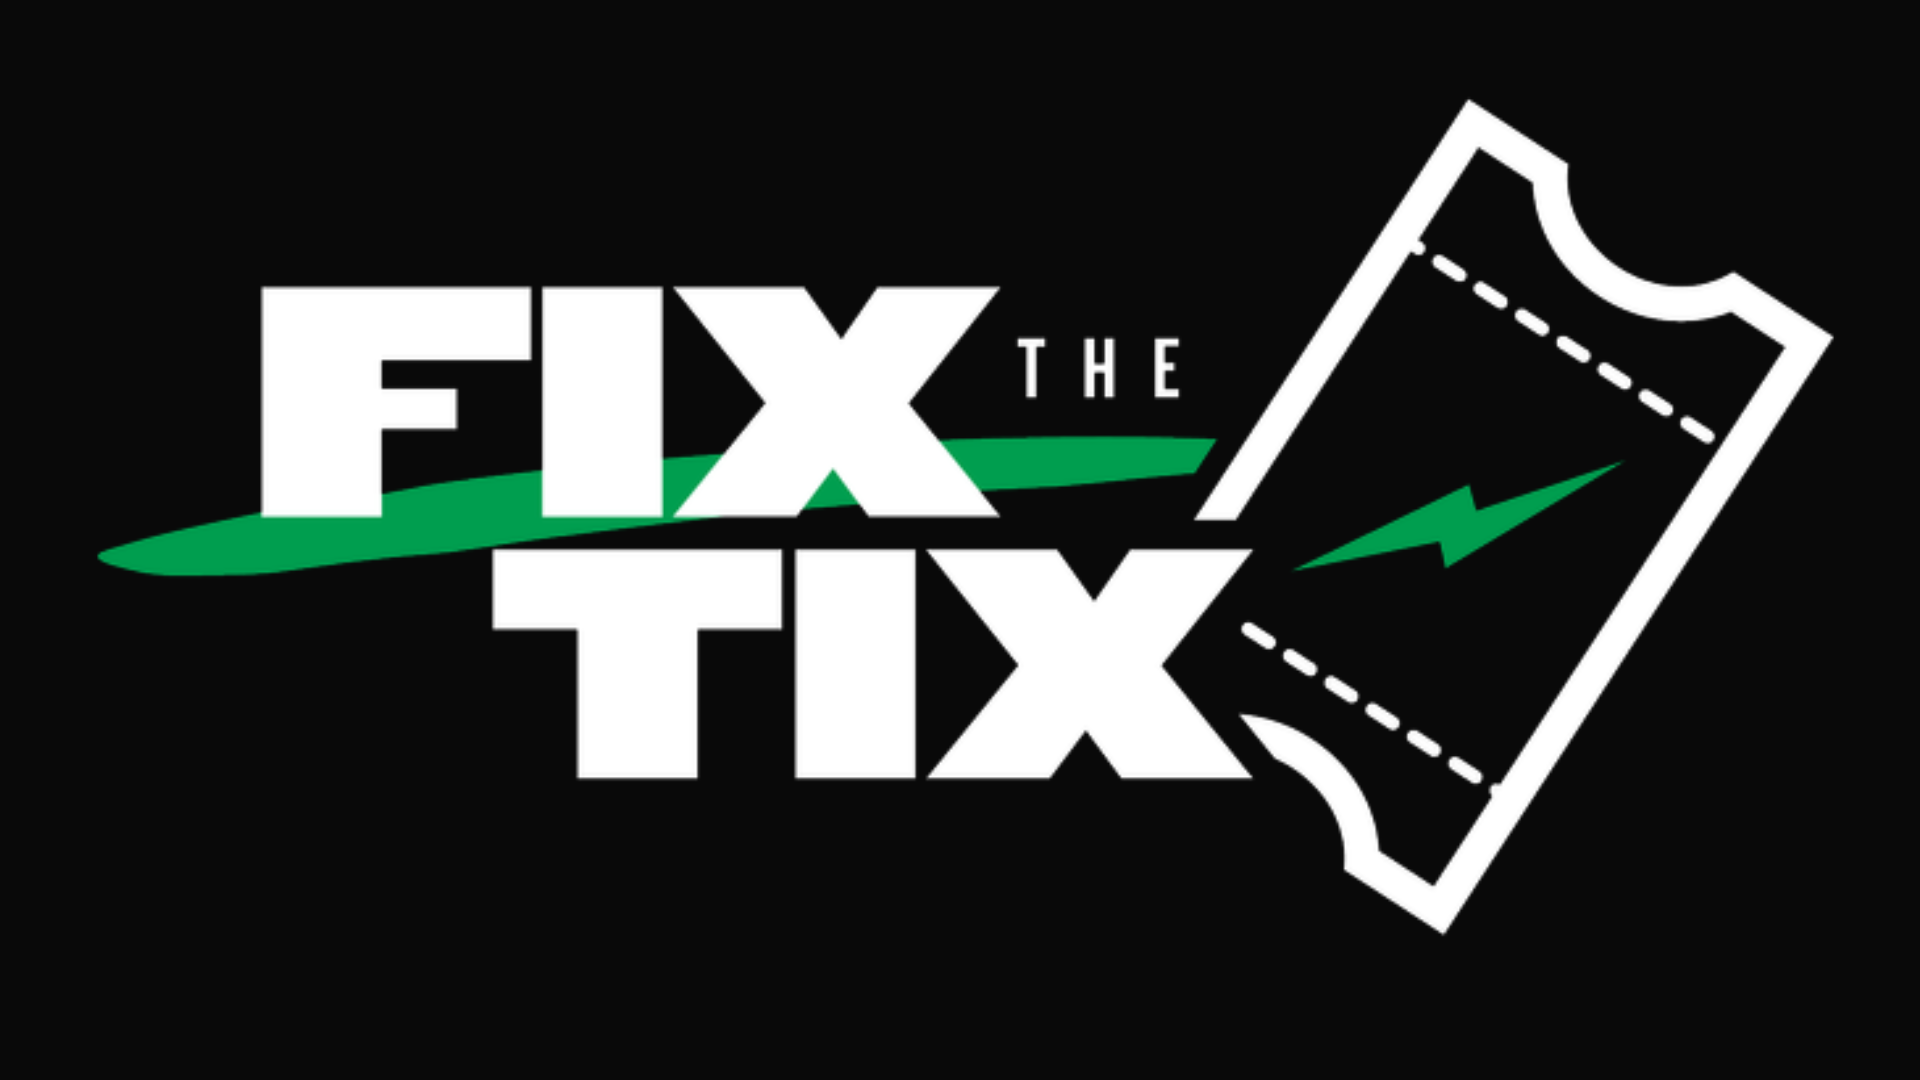 FIX THE TIX: iniciativa para regular la venta de entradas en EEUU